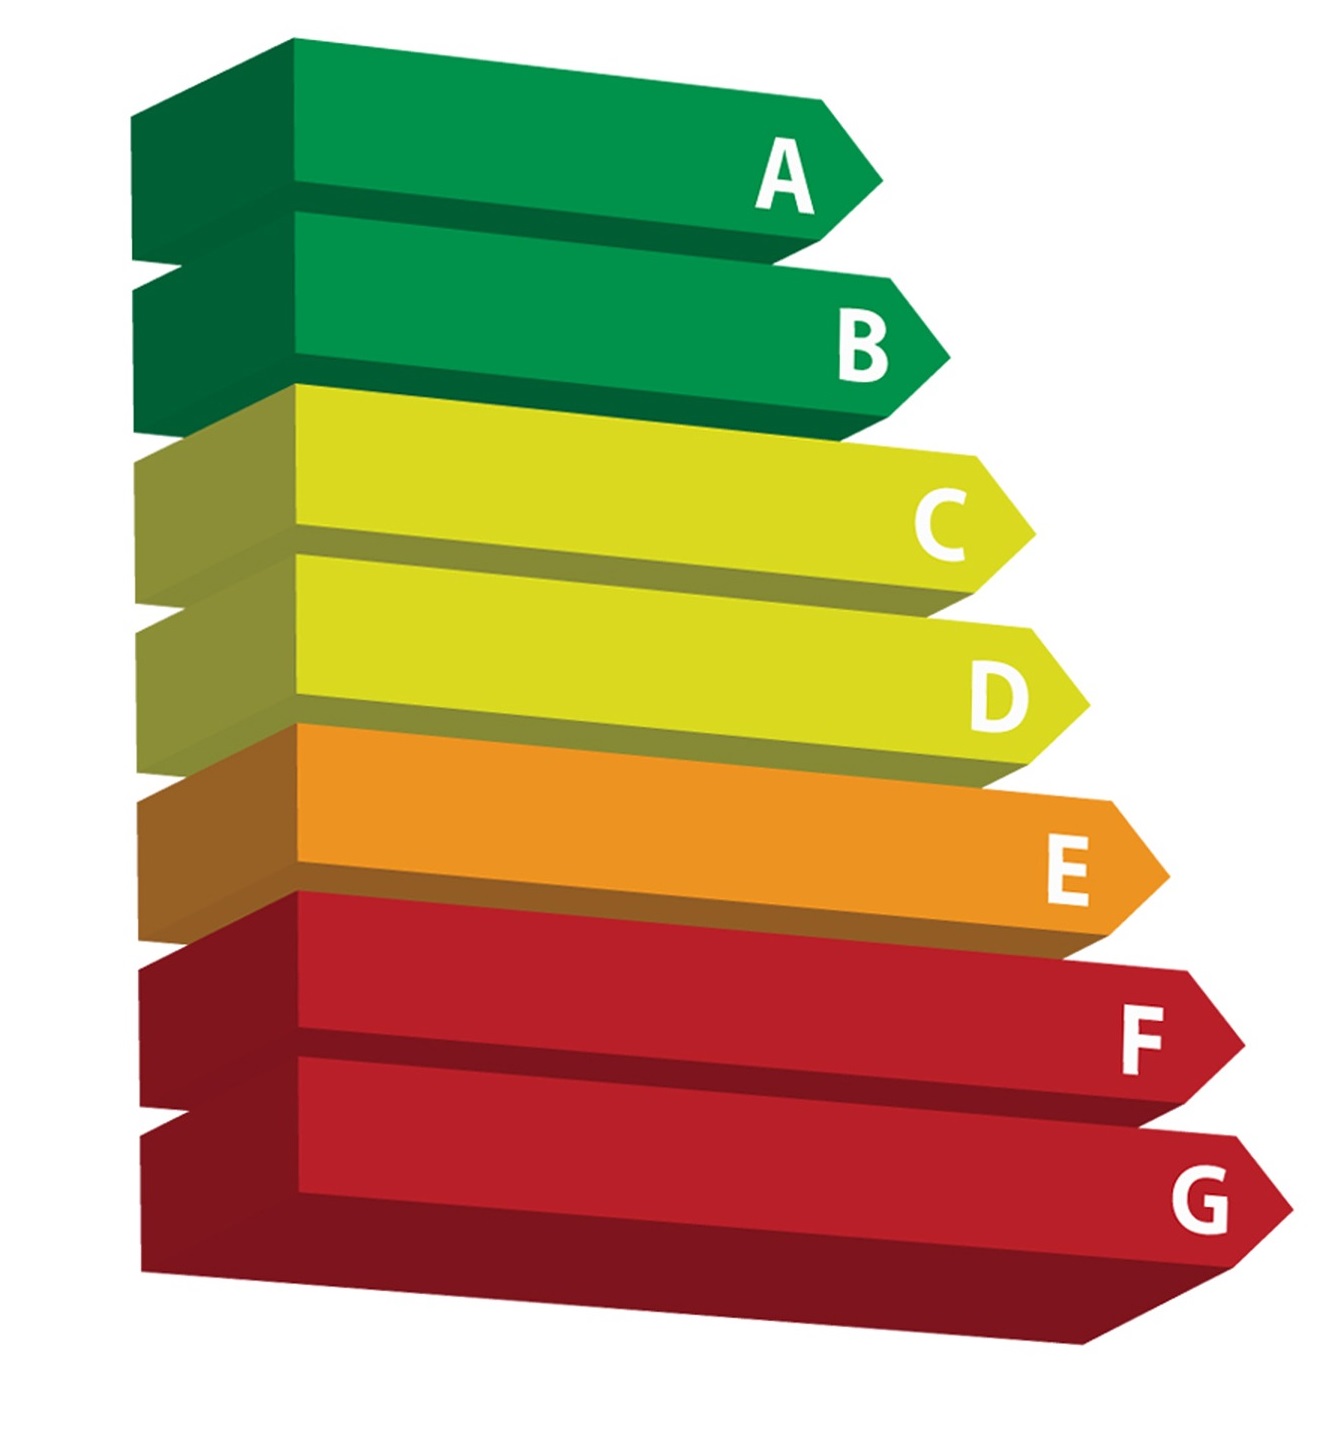 Energy efficiency ratings